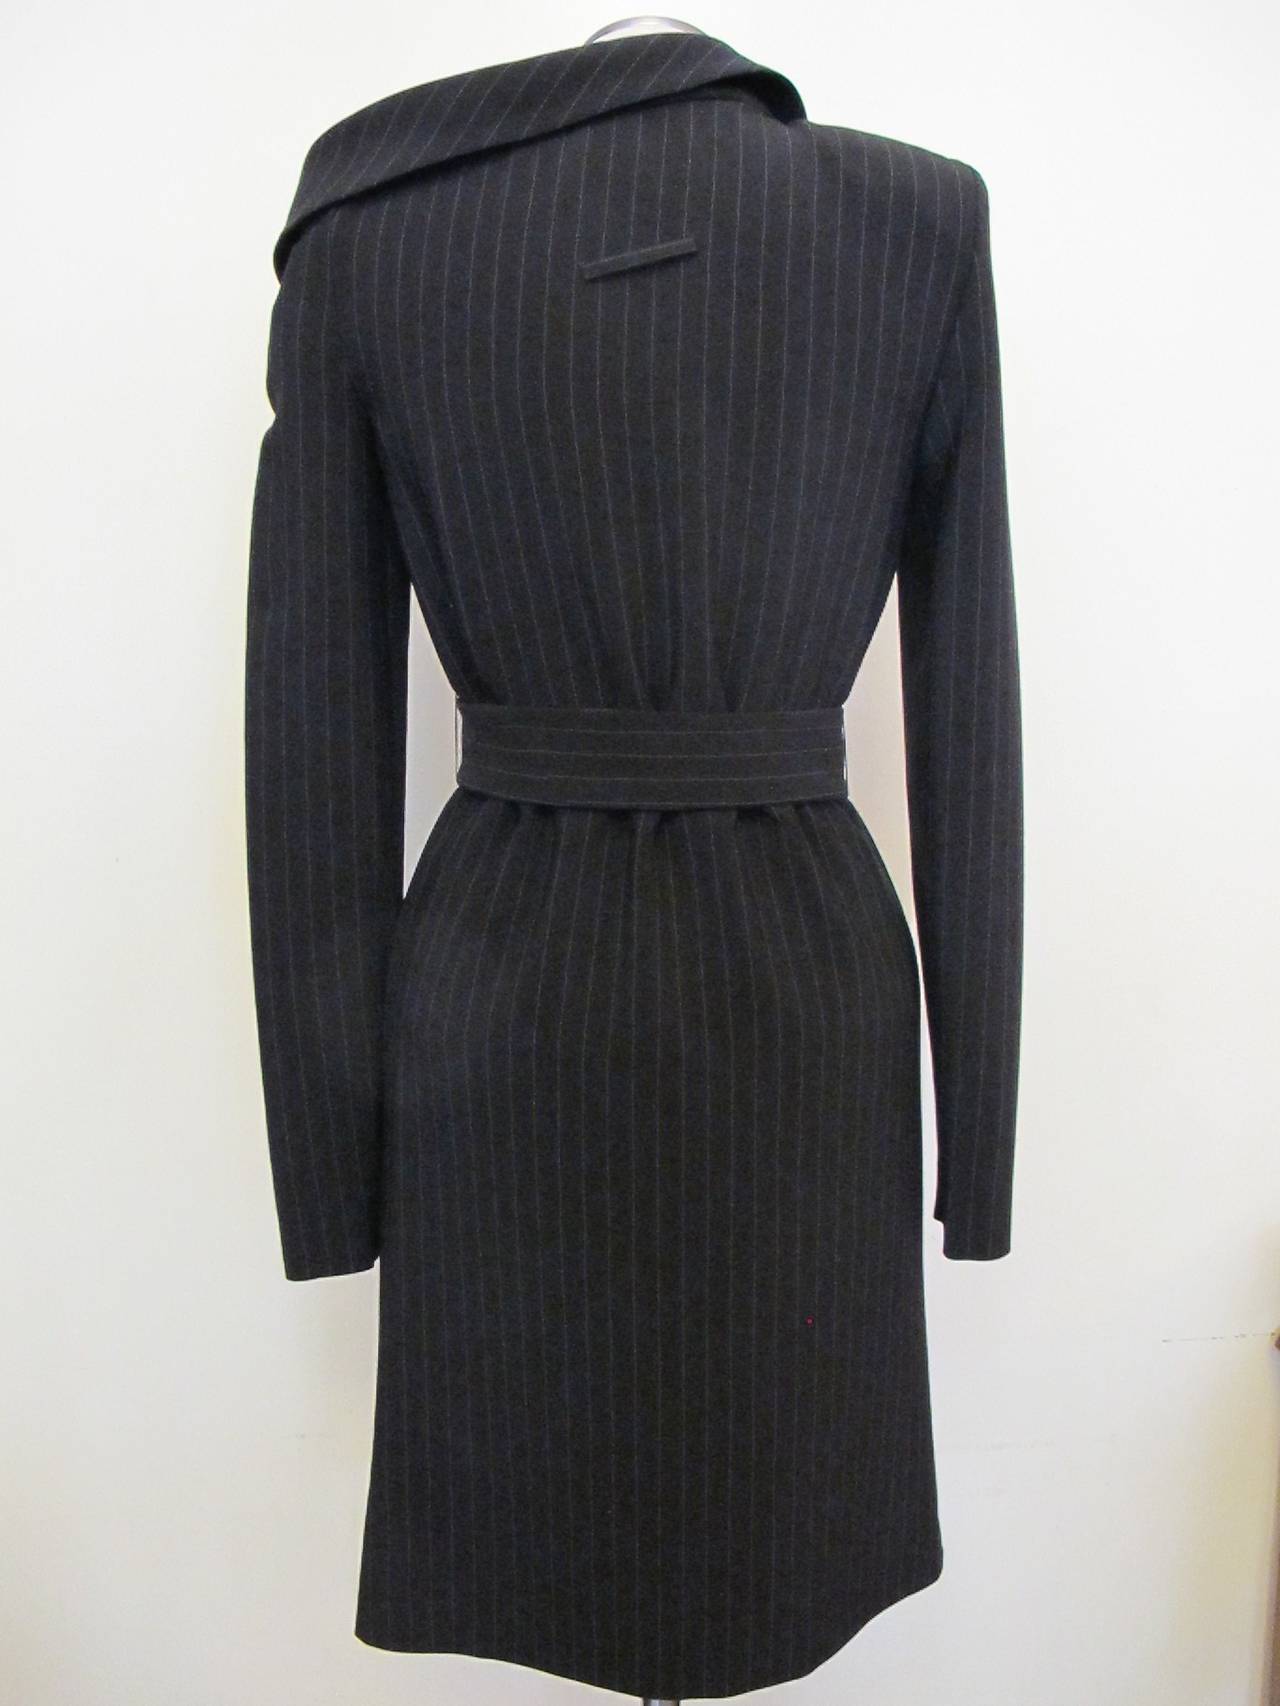 Asymmetrical Jean Paul Gaultier Pinstripe Dress For Sale 2